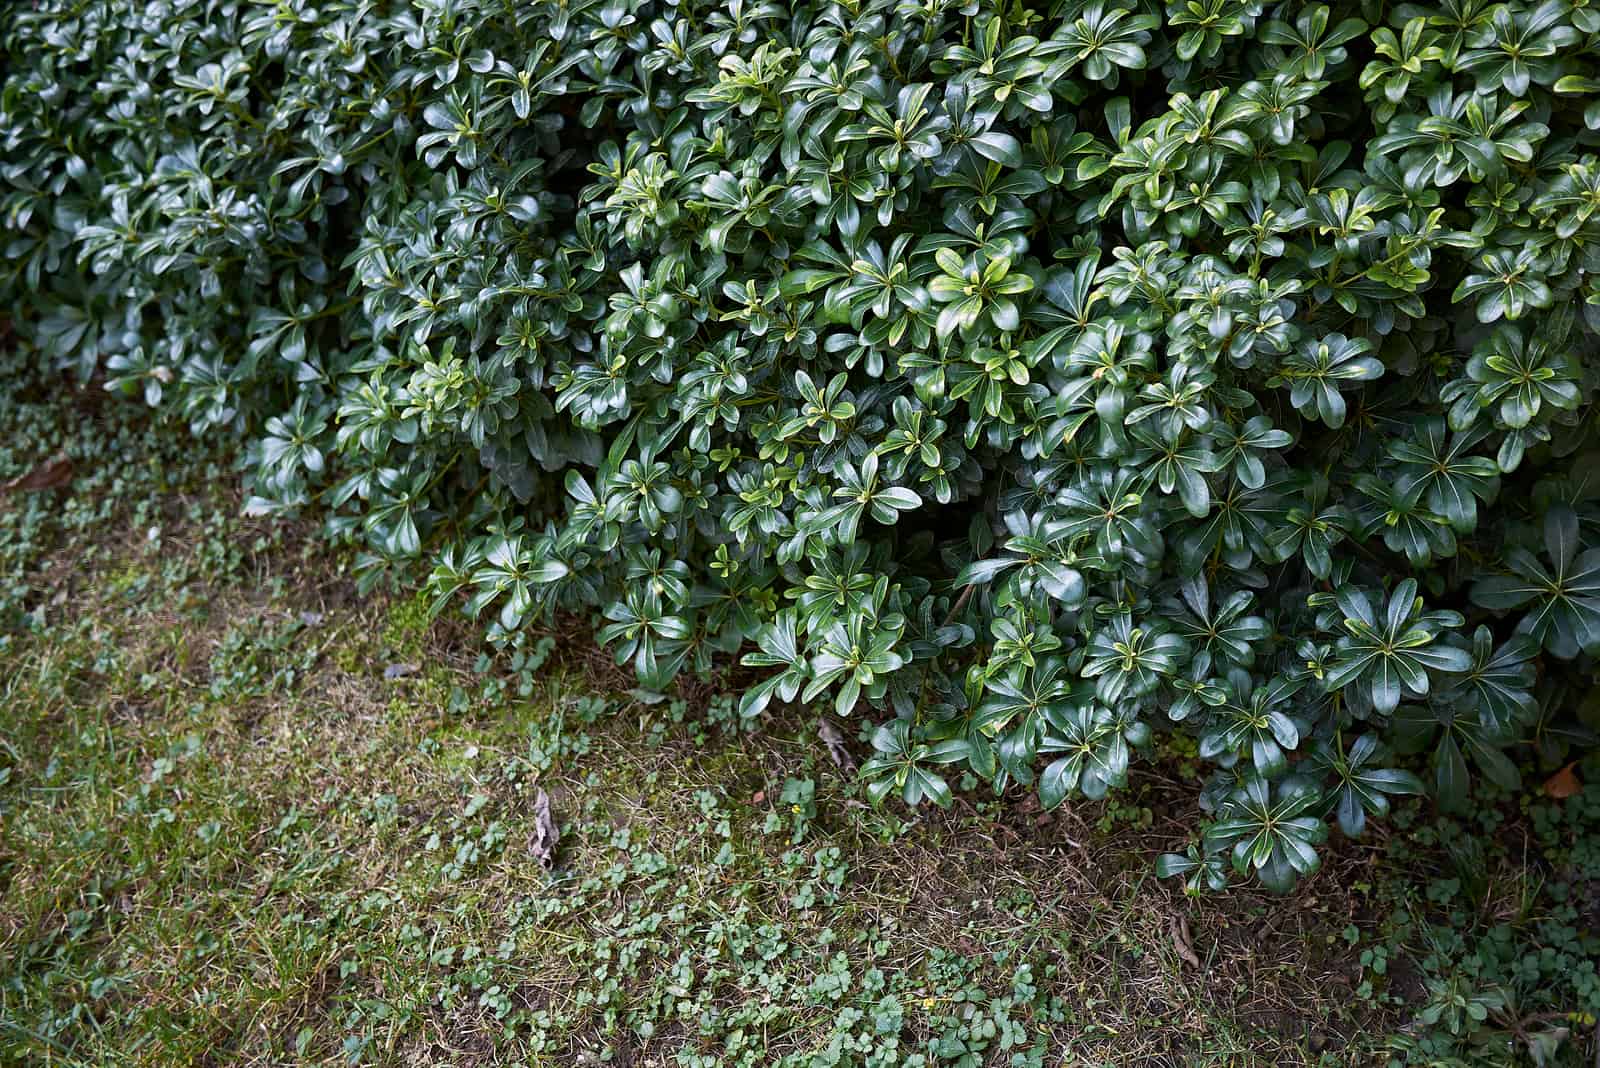 Pittosporum Hedge in garden